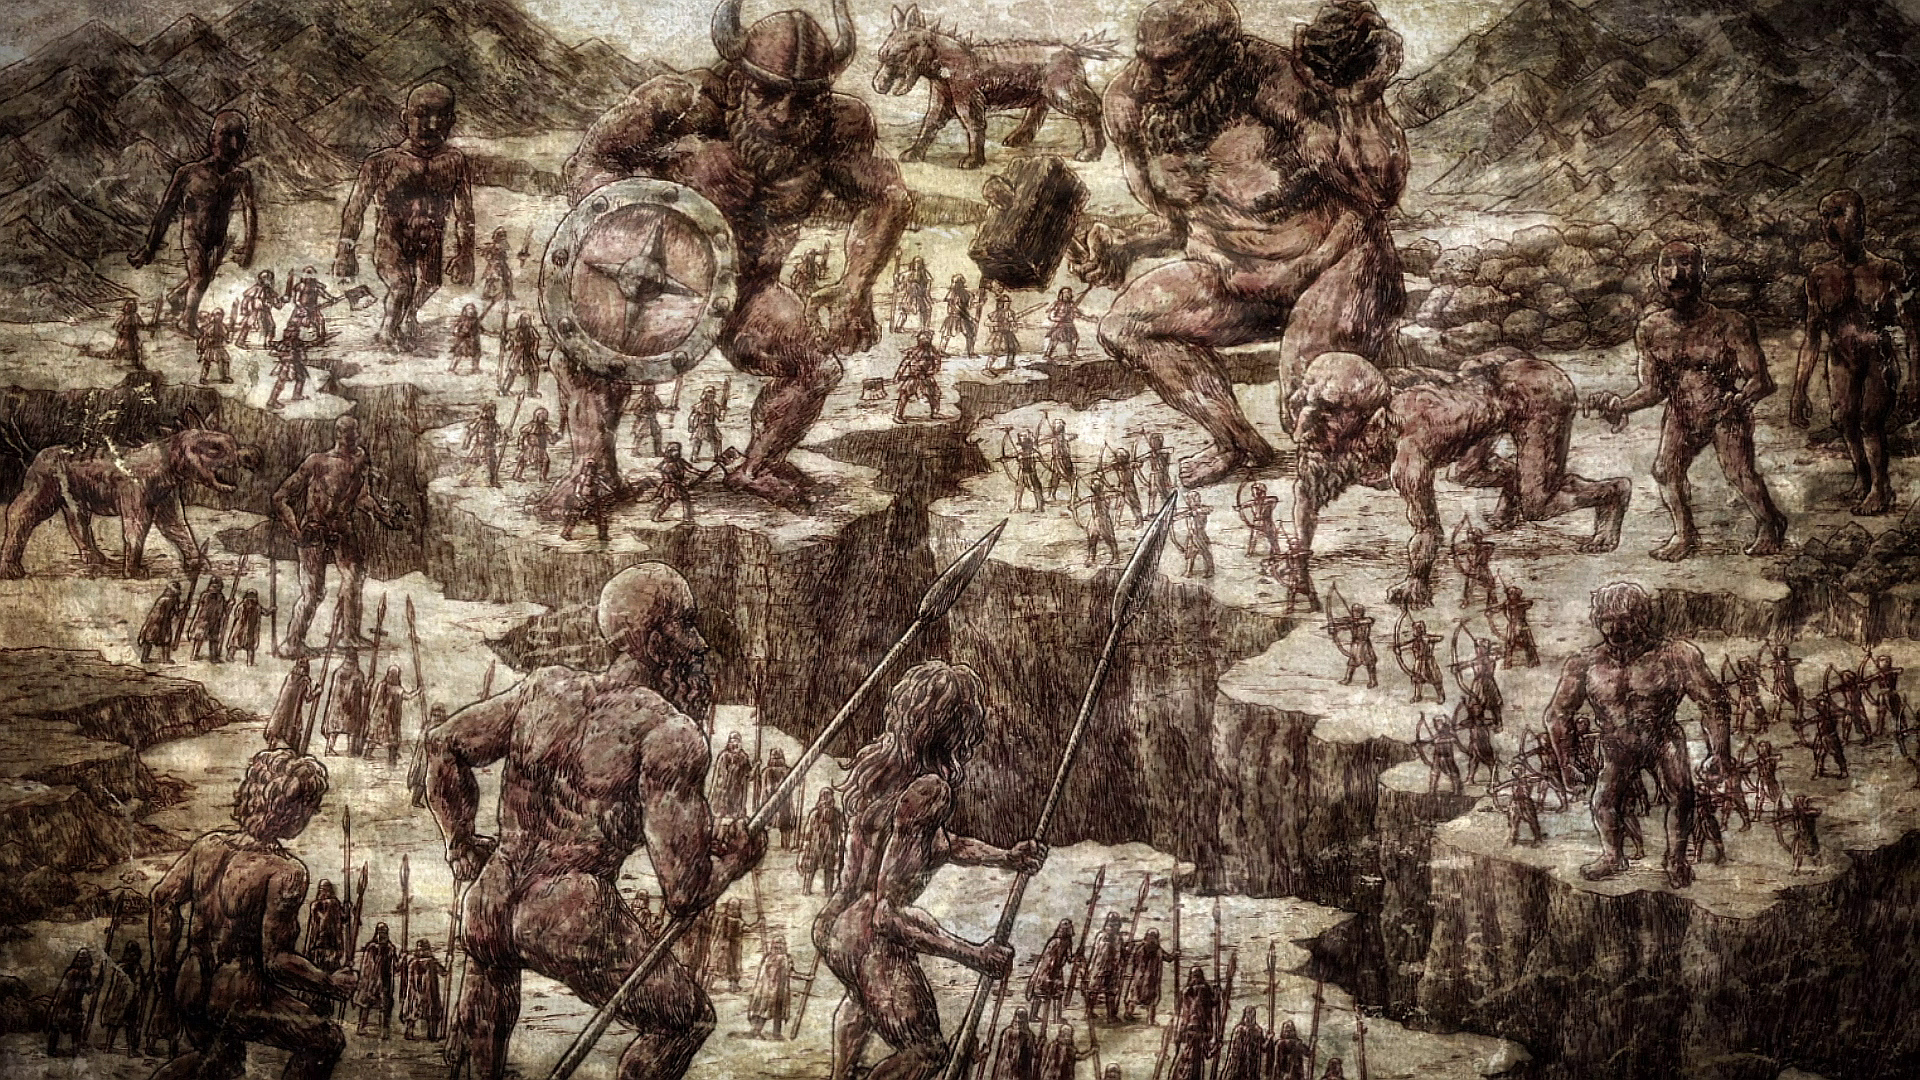 Attack on Titan – Teoria conecta os Titãs ao Império Romano - Critical Hits